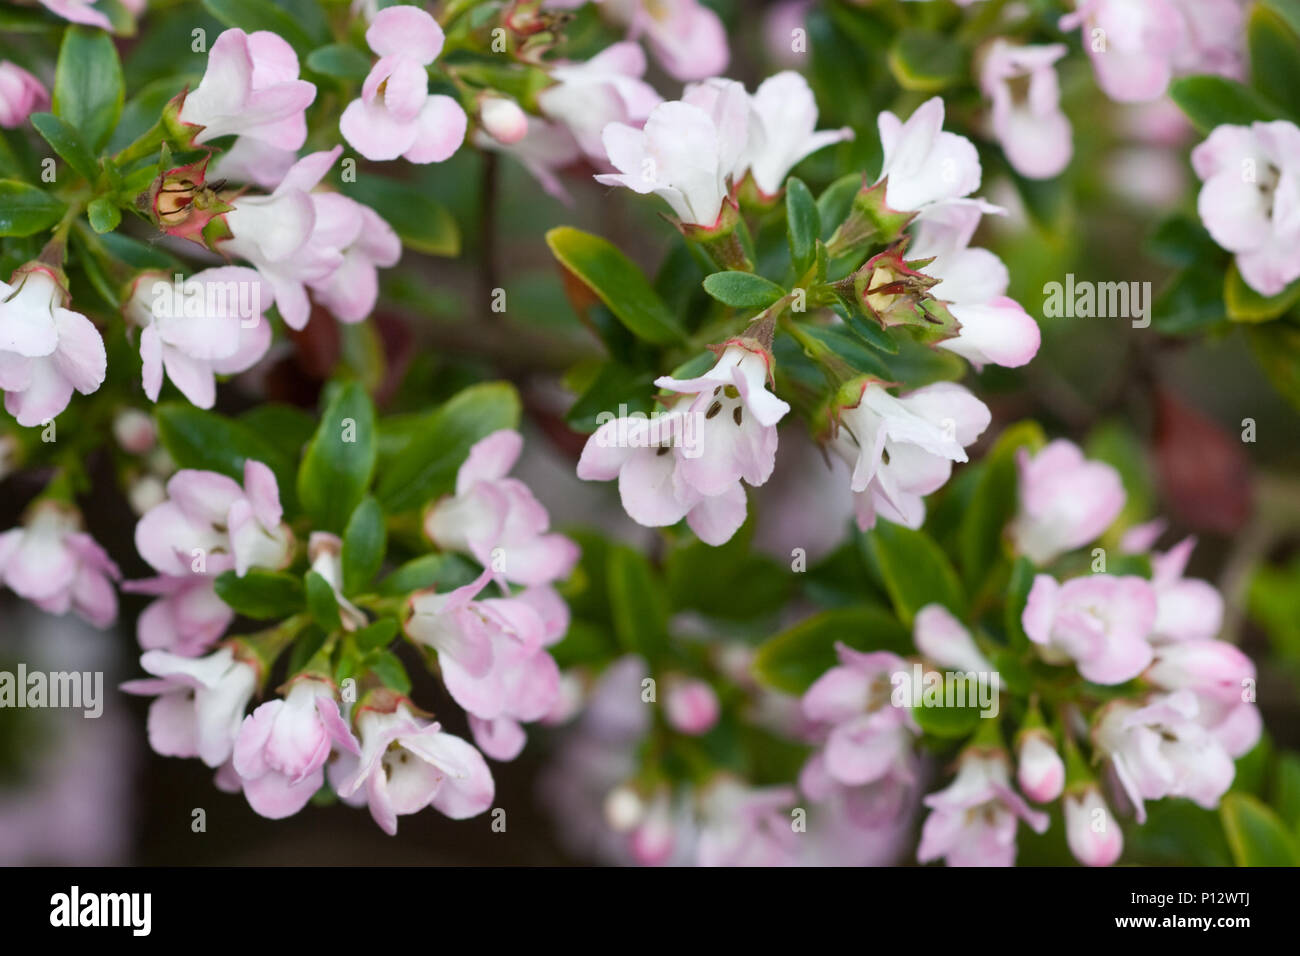 Escallonia 'Apple Blossom' in flower Stock Photo